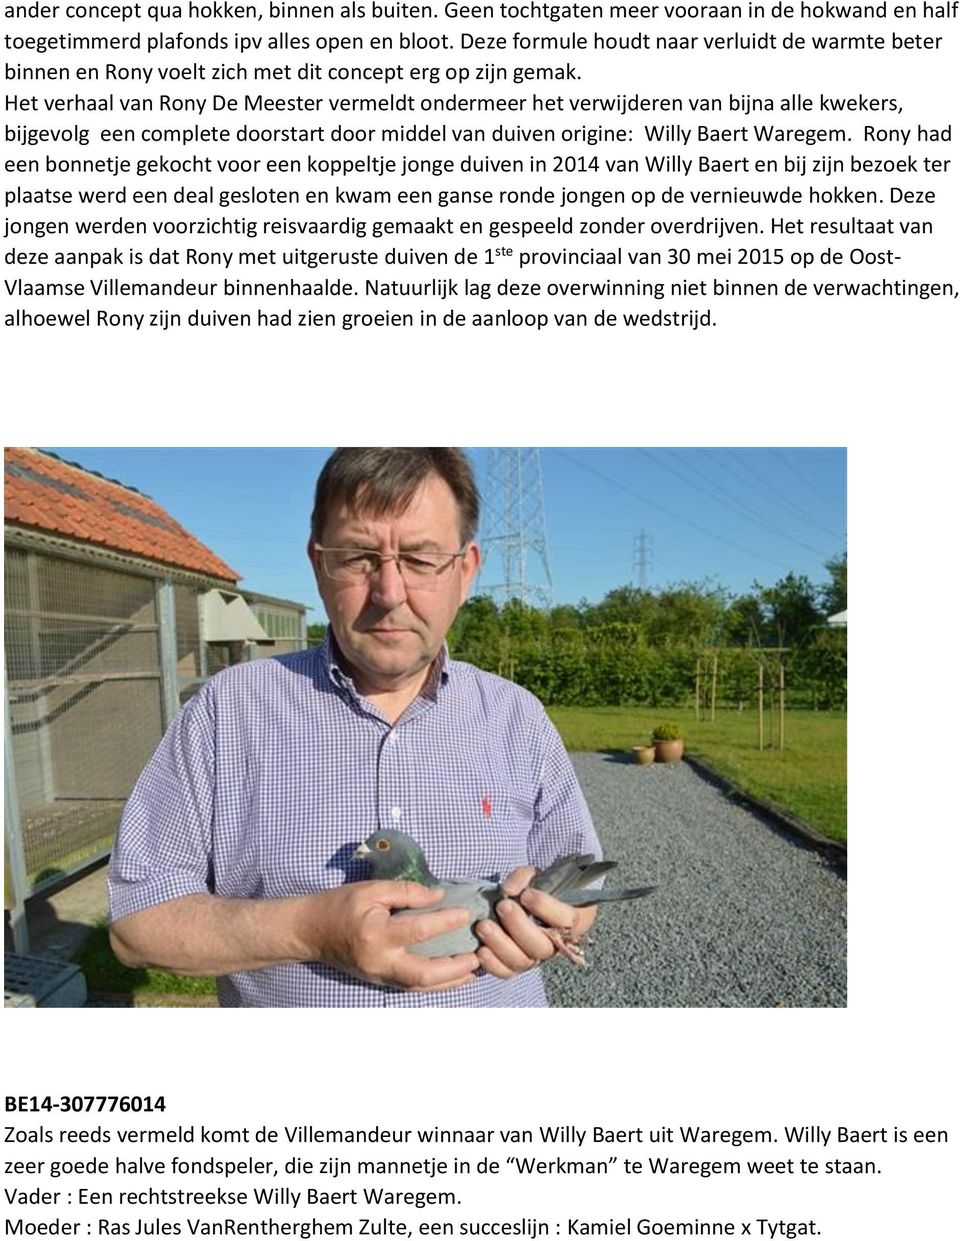 Het verhaal van Rony De Meester vermeldt ondermeer het verwijderen van bijna alle kwekers, bijgevolg een complete doorstart door middel van duiven origine: Willy Baert Waregem.